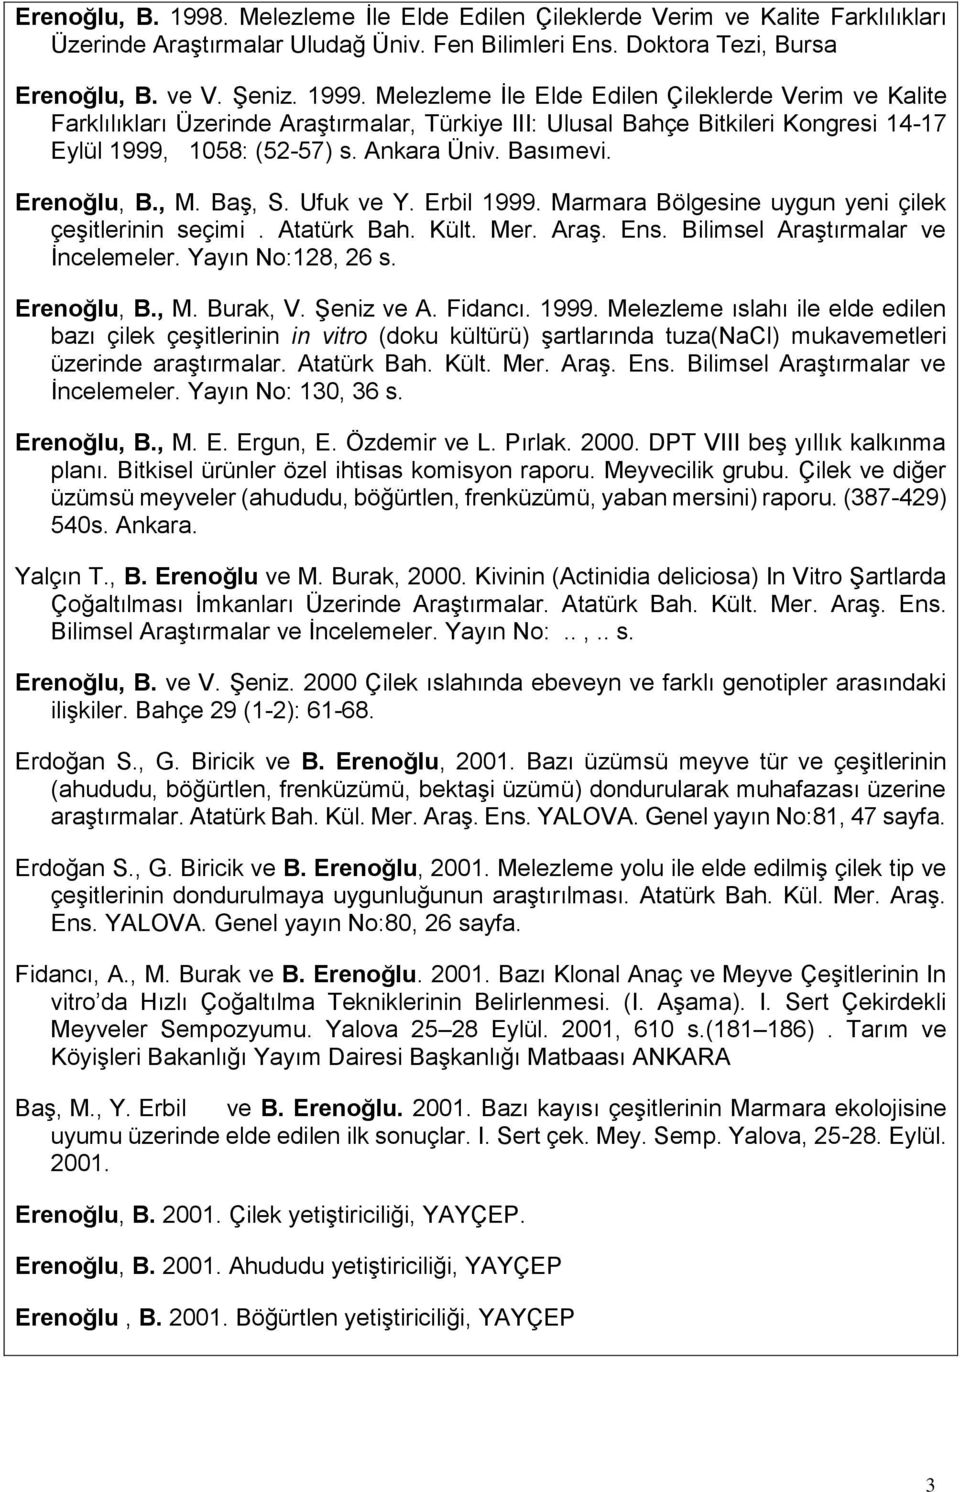 Erenoğlu, B., M. Baş, S. Ufuk ve Y. Erbil 1999. Marmara Bölgesine uygun yeni çilek çeşitlerinin seçimi. Atatürk Bah. Kült. Mer. Araş. Ens. Bilimsel Araştırmalar ve İncelemeler. Yayın No:128, 26 s.